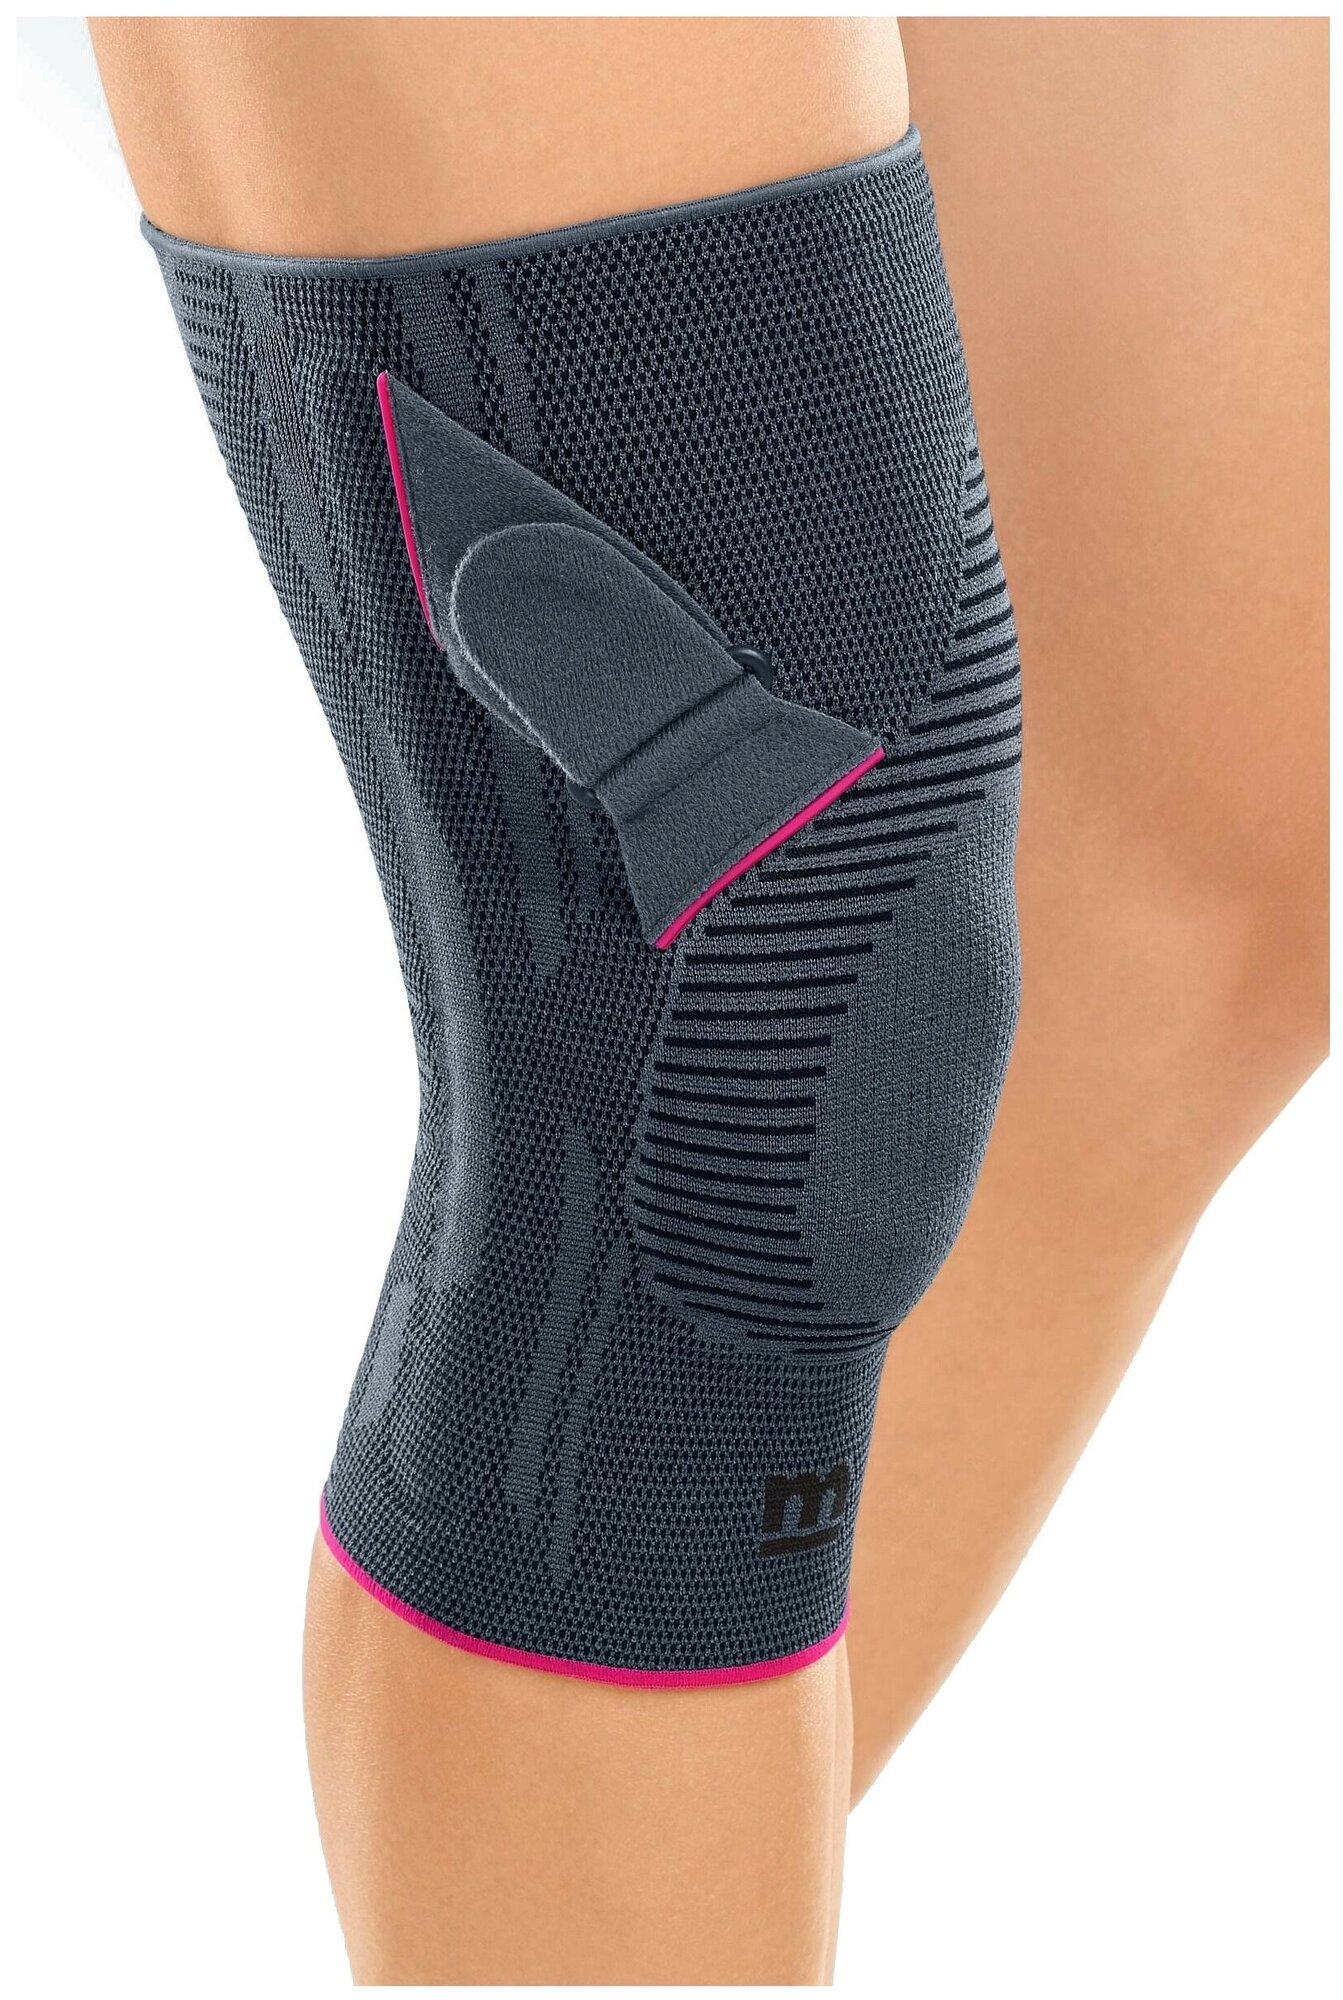 Компрессионный бандаж Genumedi PT на коленный сустав. Правый K143 Medi, размер 5